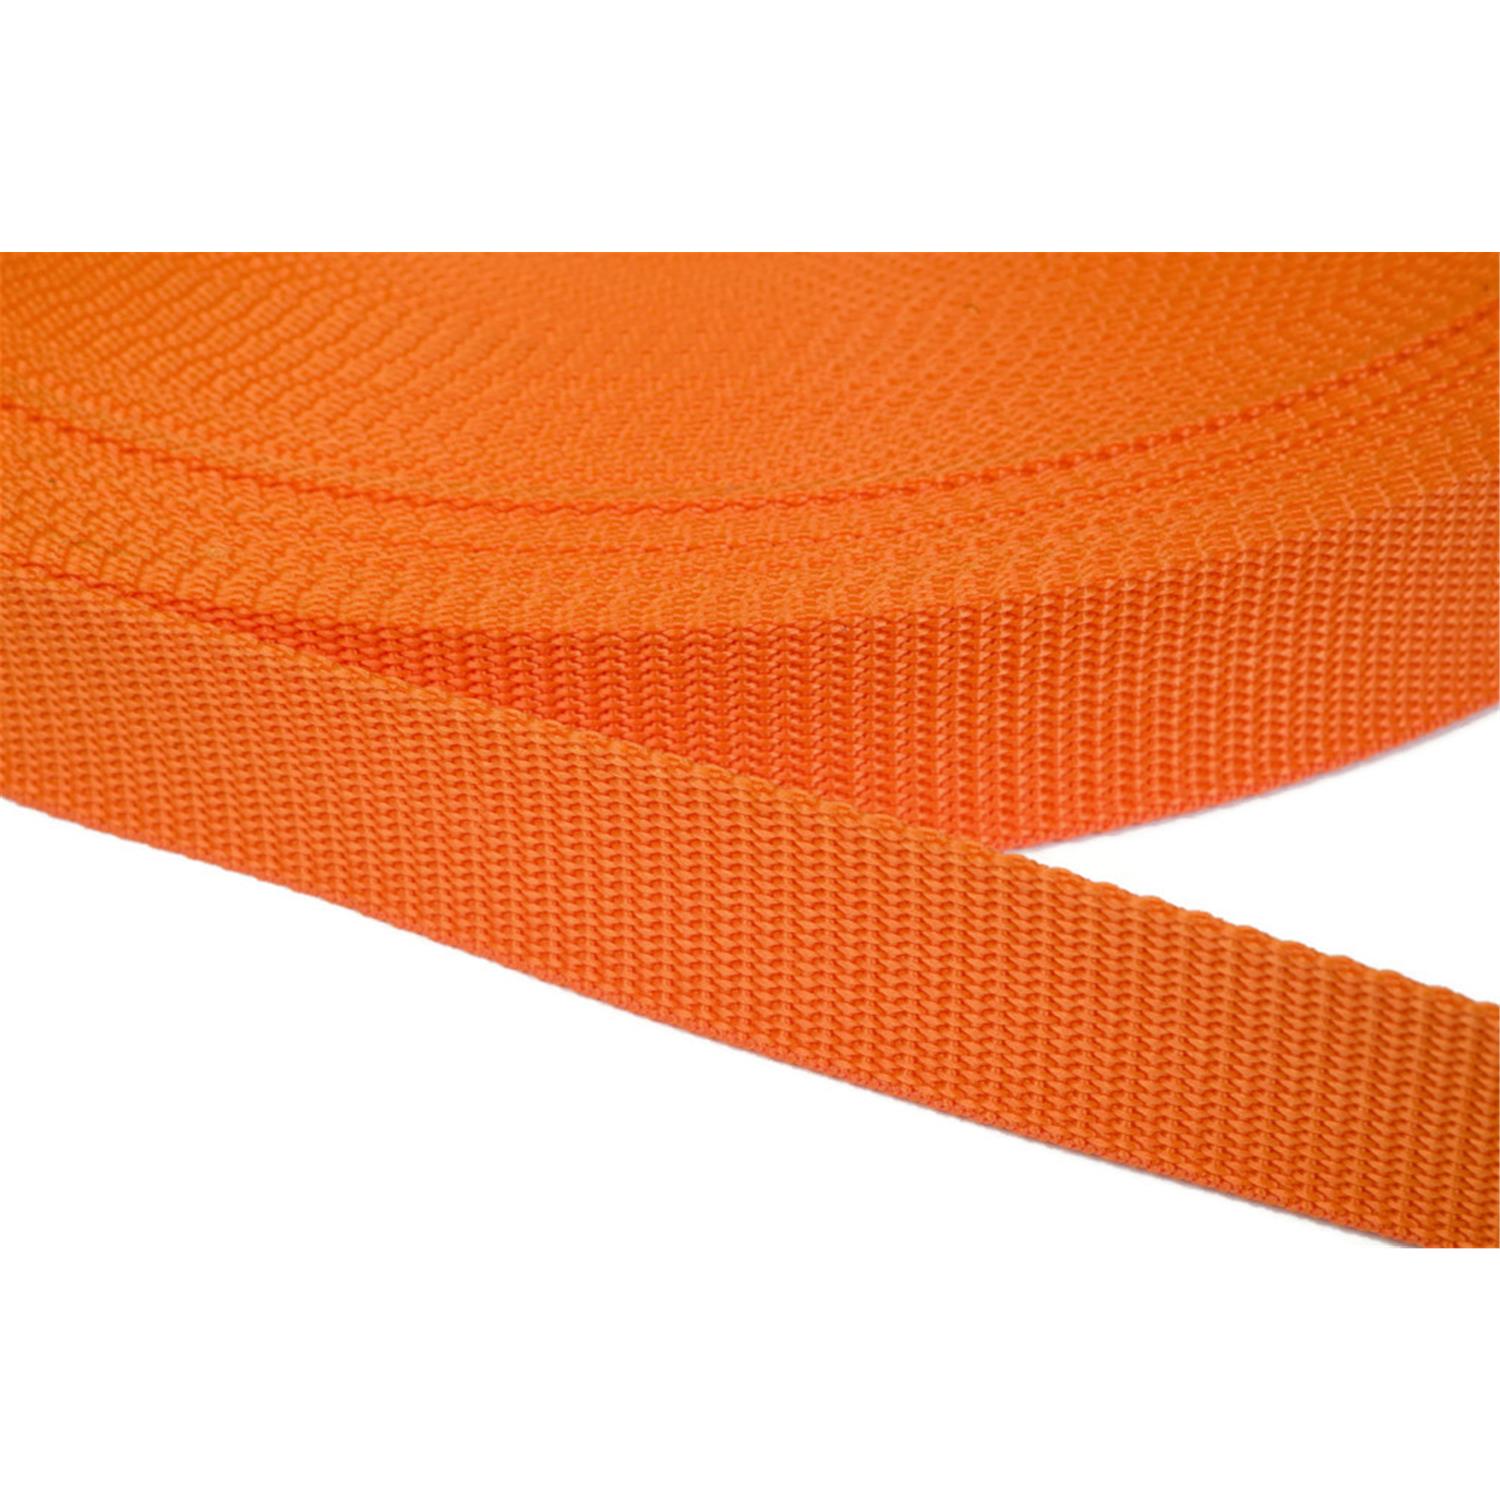 Gurtband 15mm breit aus Polypropylen in 41 Farben 11 - orange 12 Meter